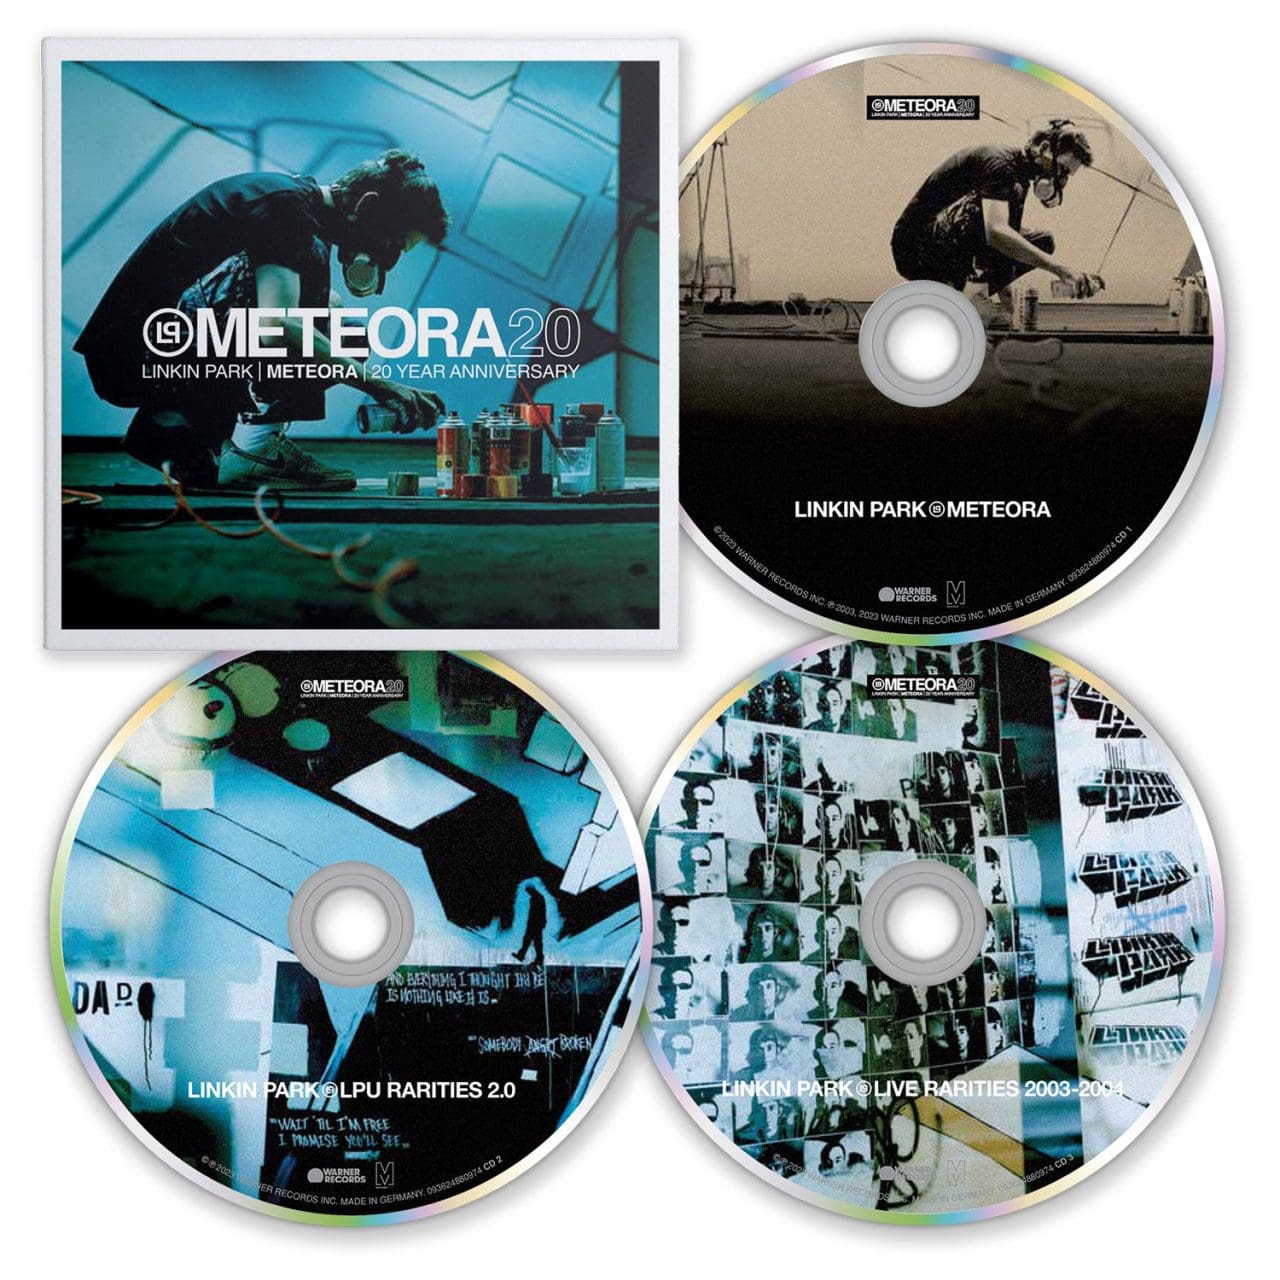 Meteora 20 CDs